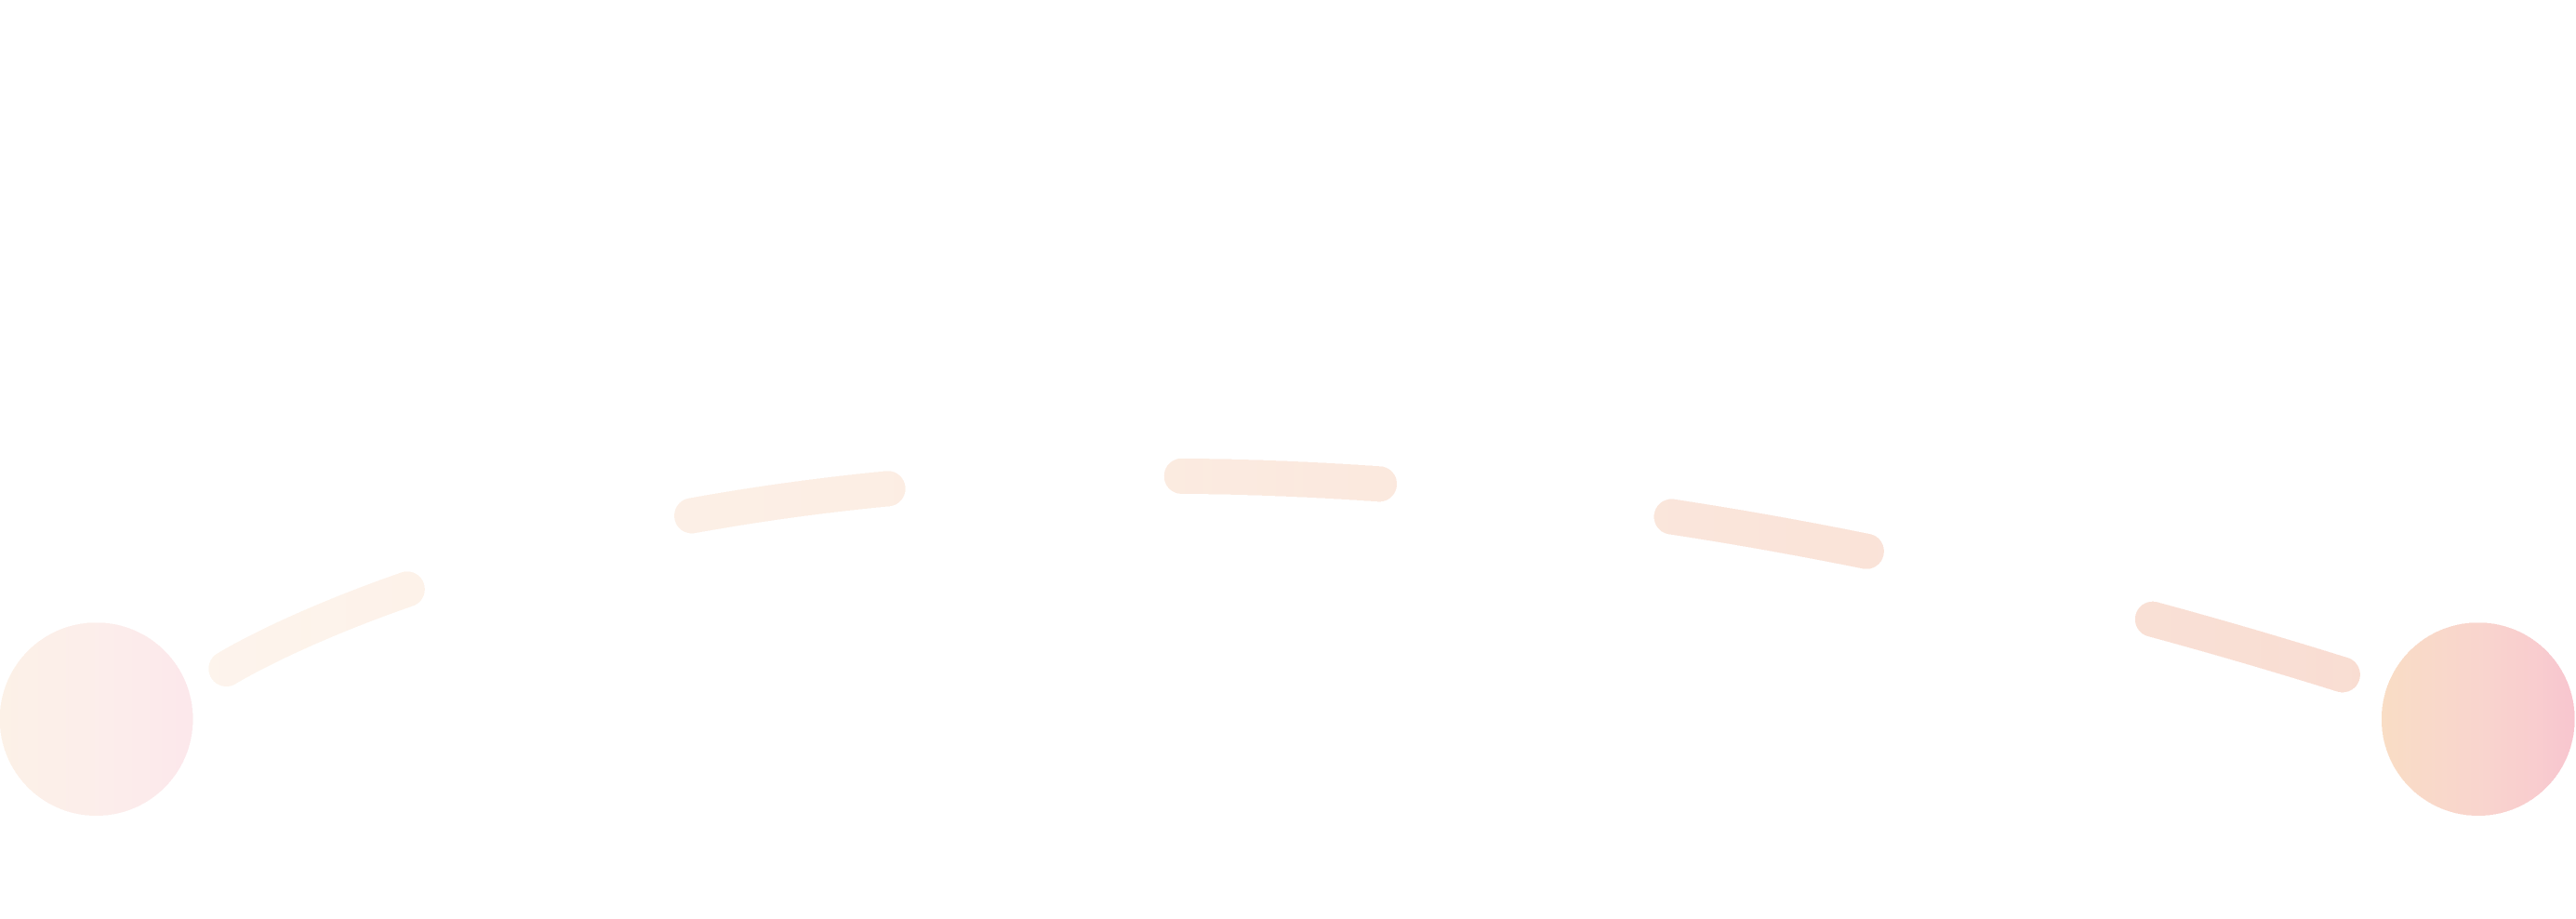 Linea arancione che rappresenta la prima fase del processo di candidatura.